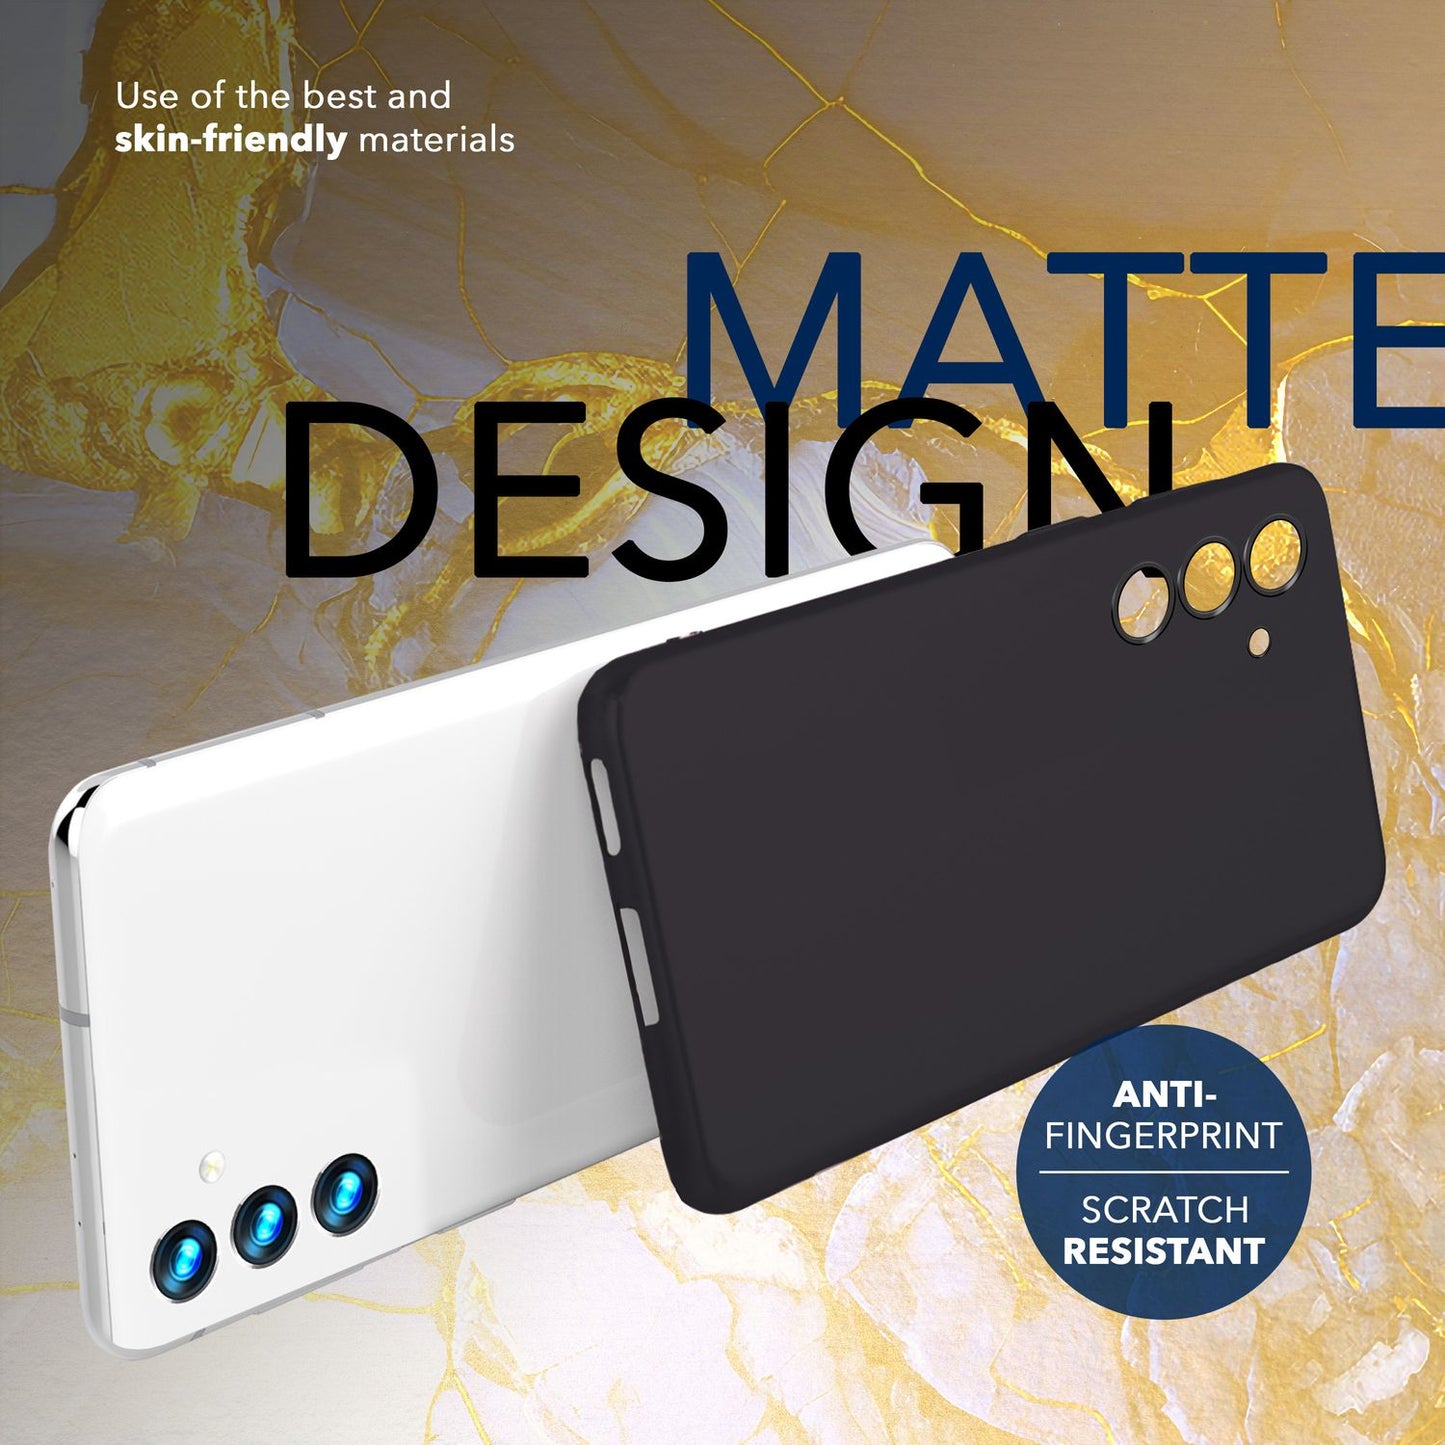 NALIA Extrem Dünnes Hardcase für Samsung Galaxy S24 Hülle, 0,3mm Ultra Schlanke Schutzhülle, Extra Slim Cover Matt